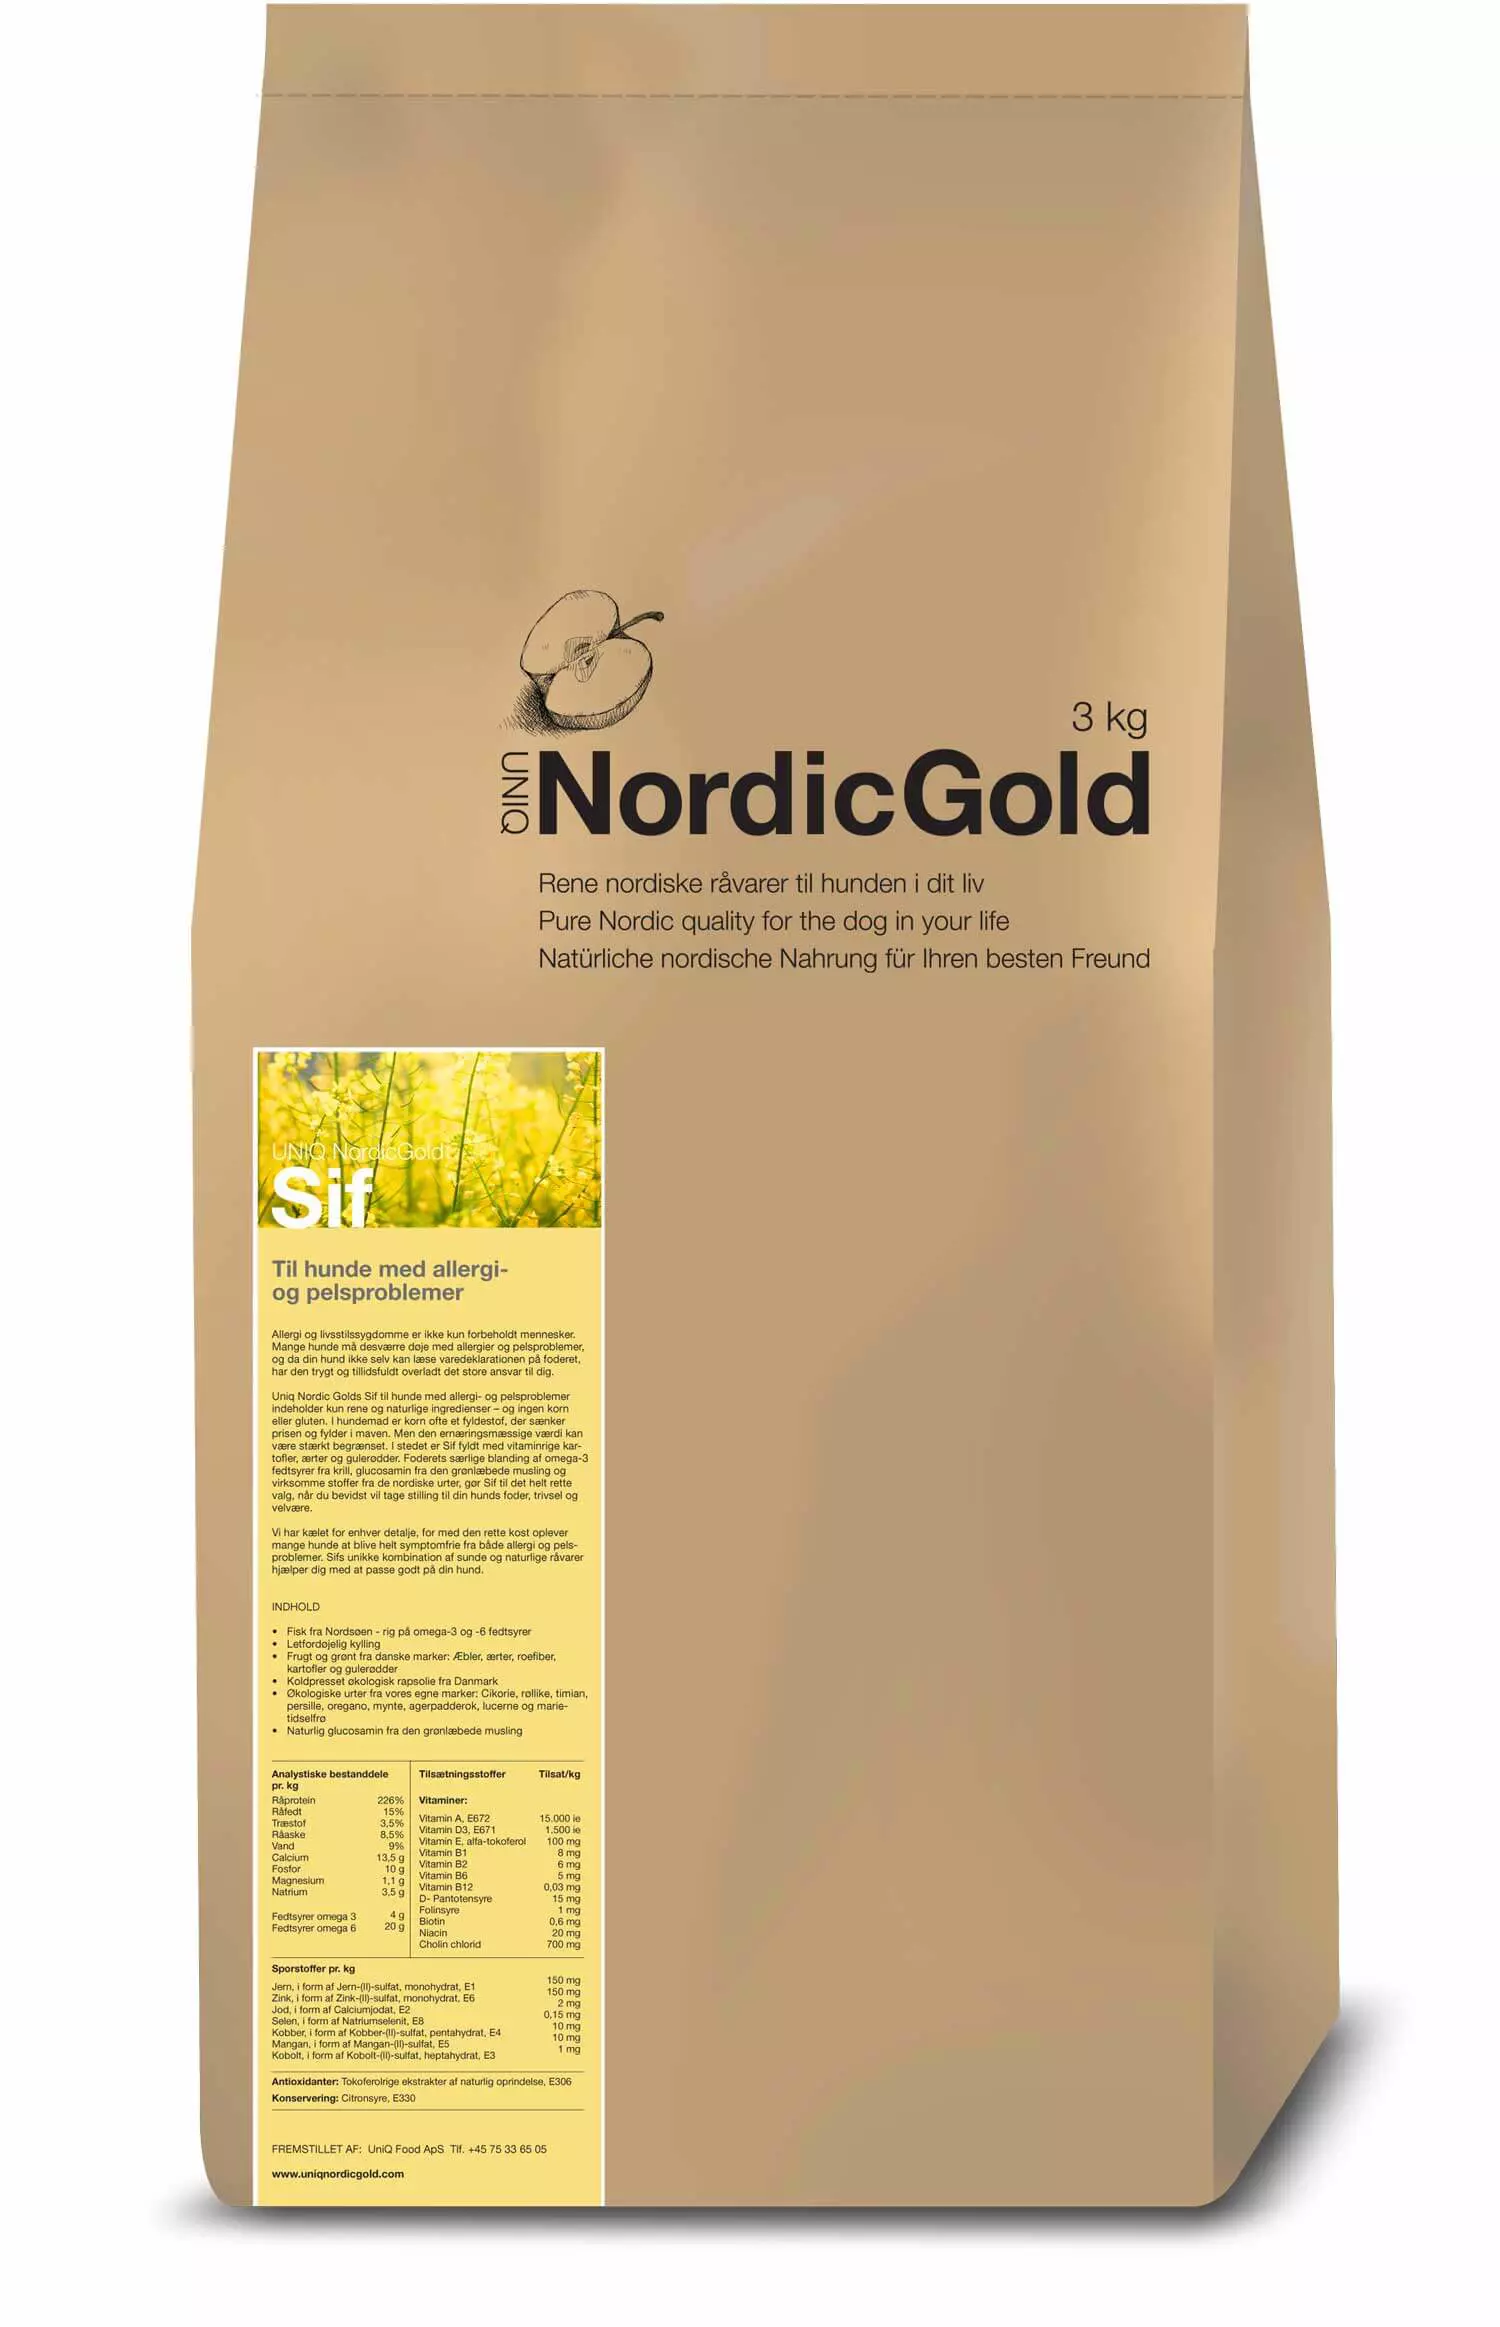 Uniq Nordic Gold Sif Kg